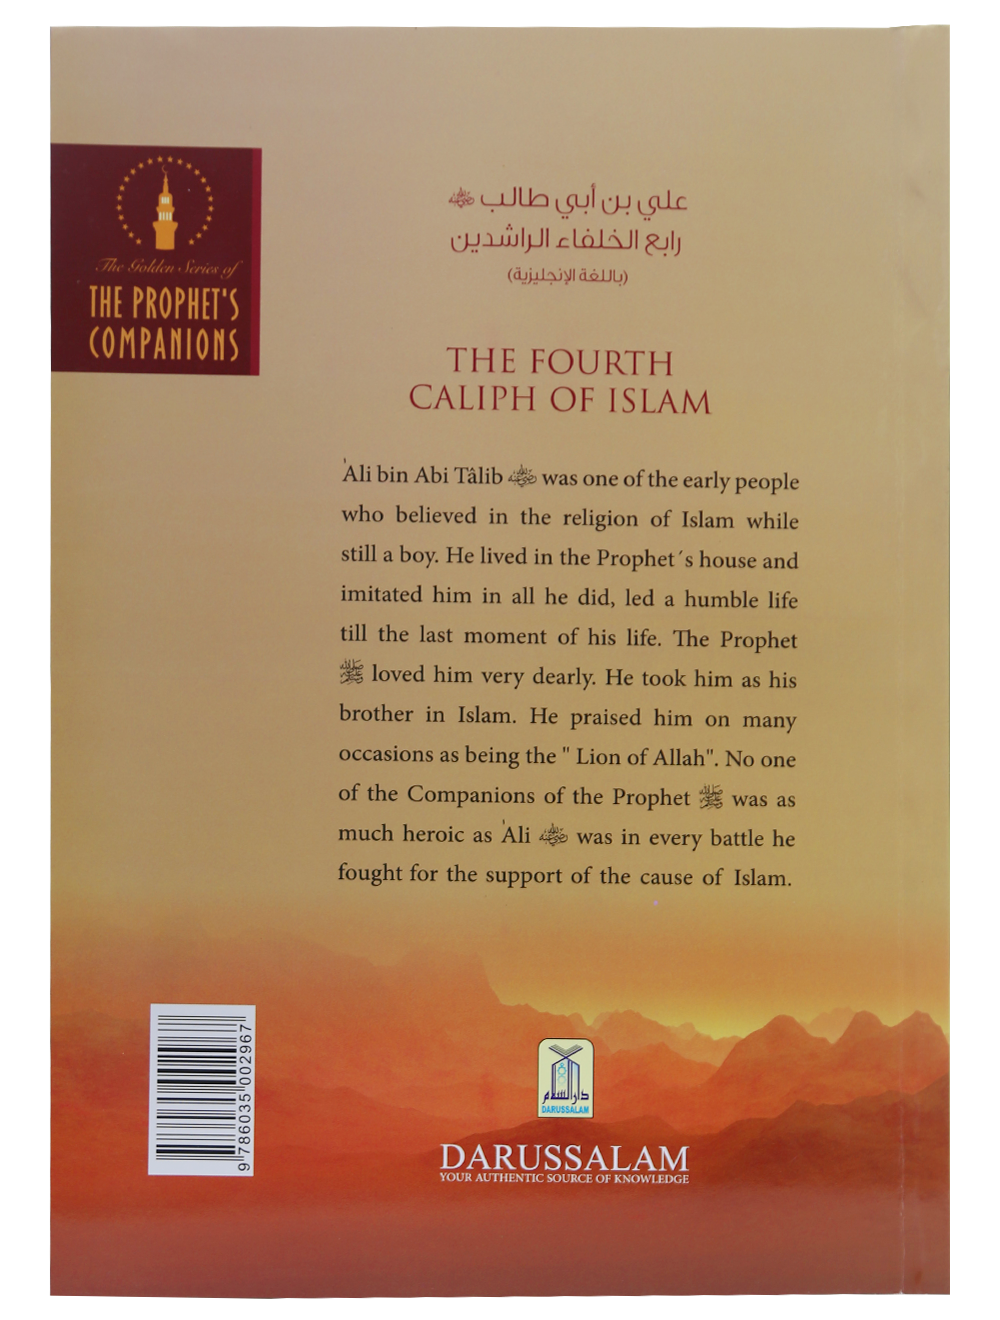 Ali bin Abi Talib (The Golden Series of The Prophet's Companions)